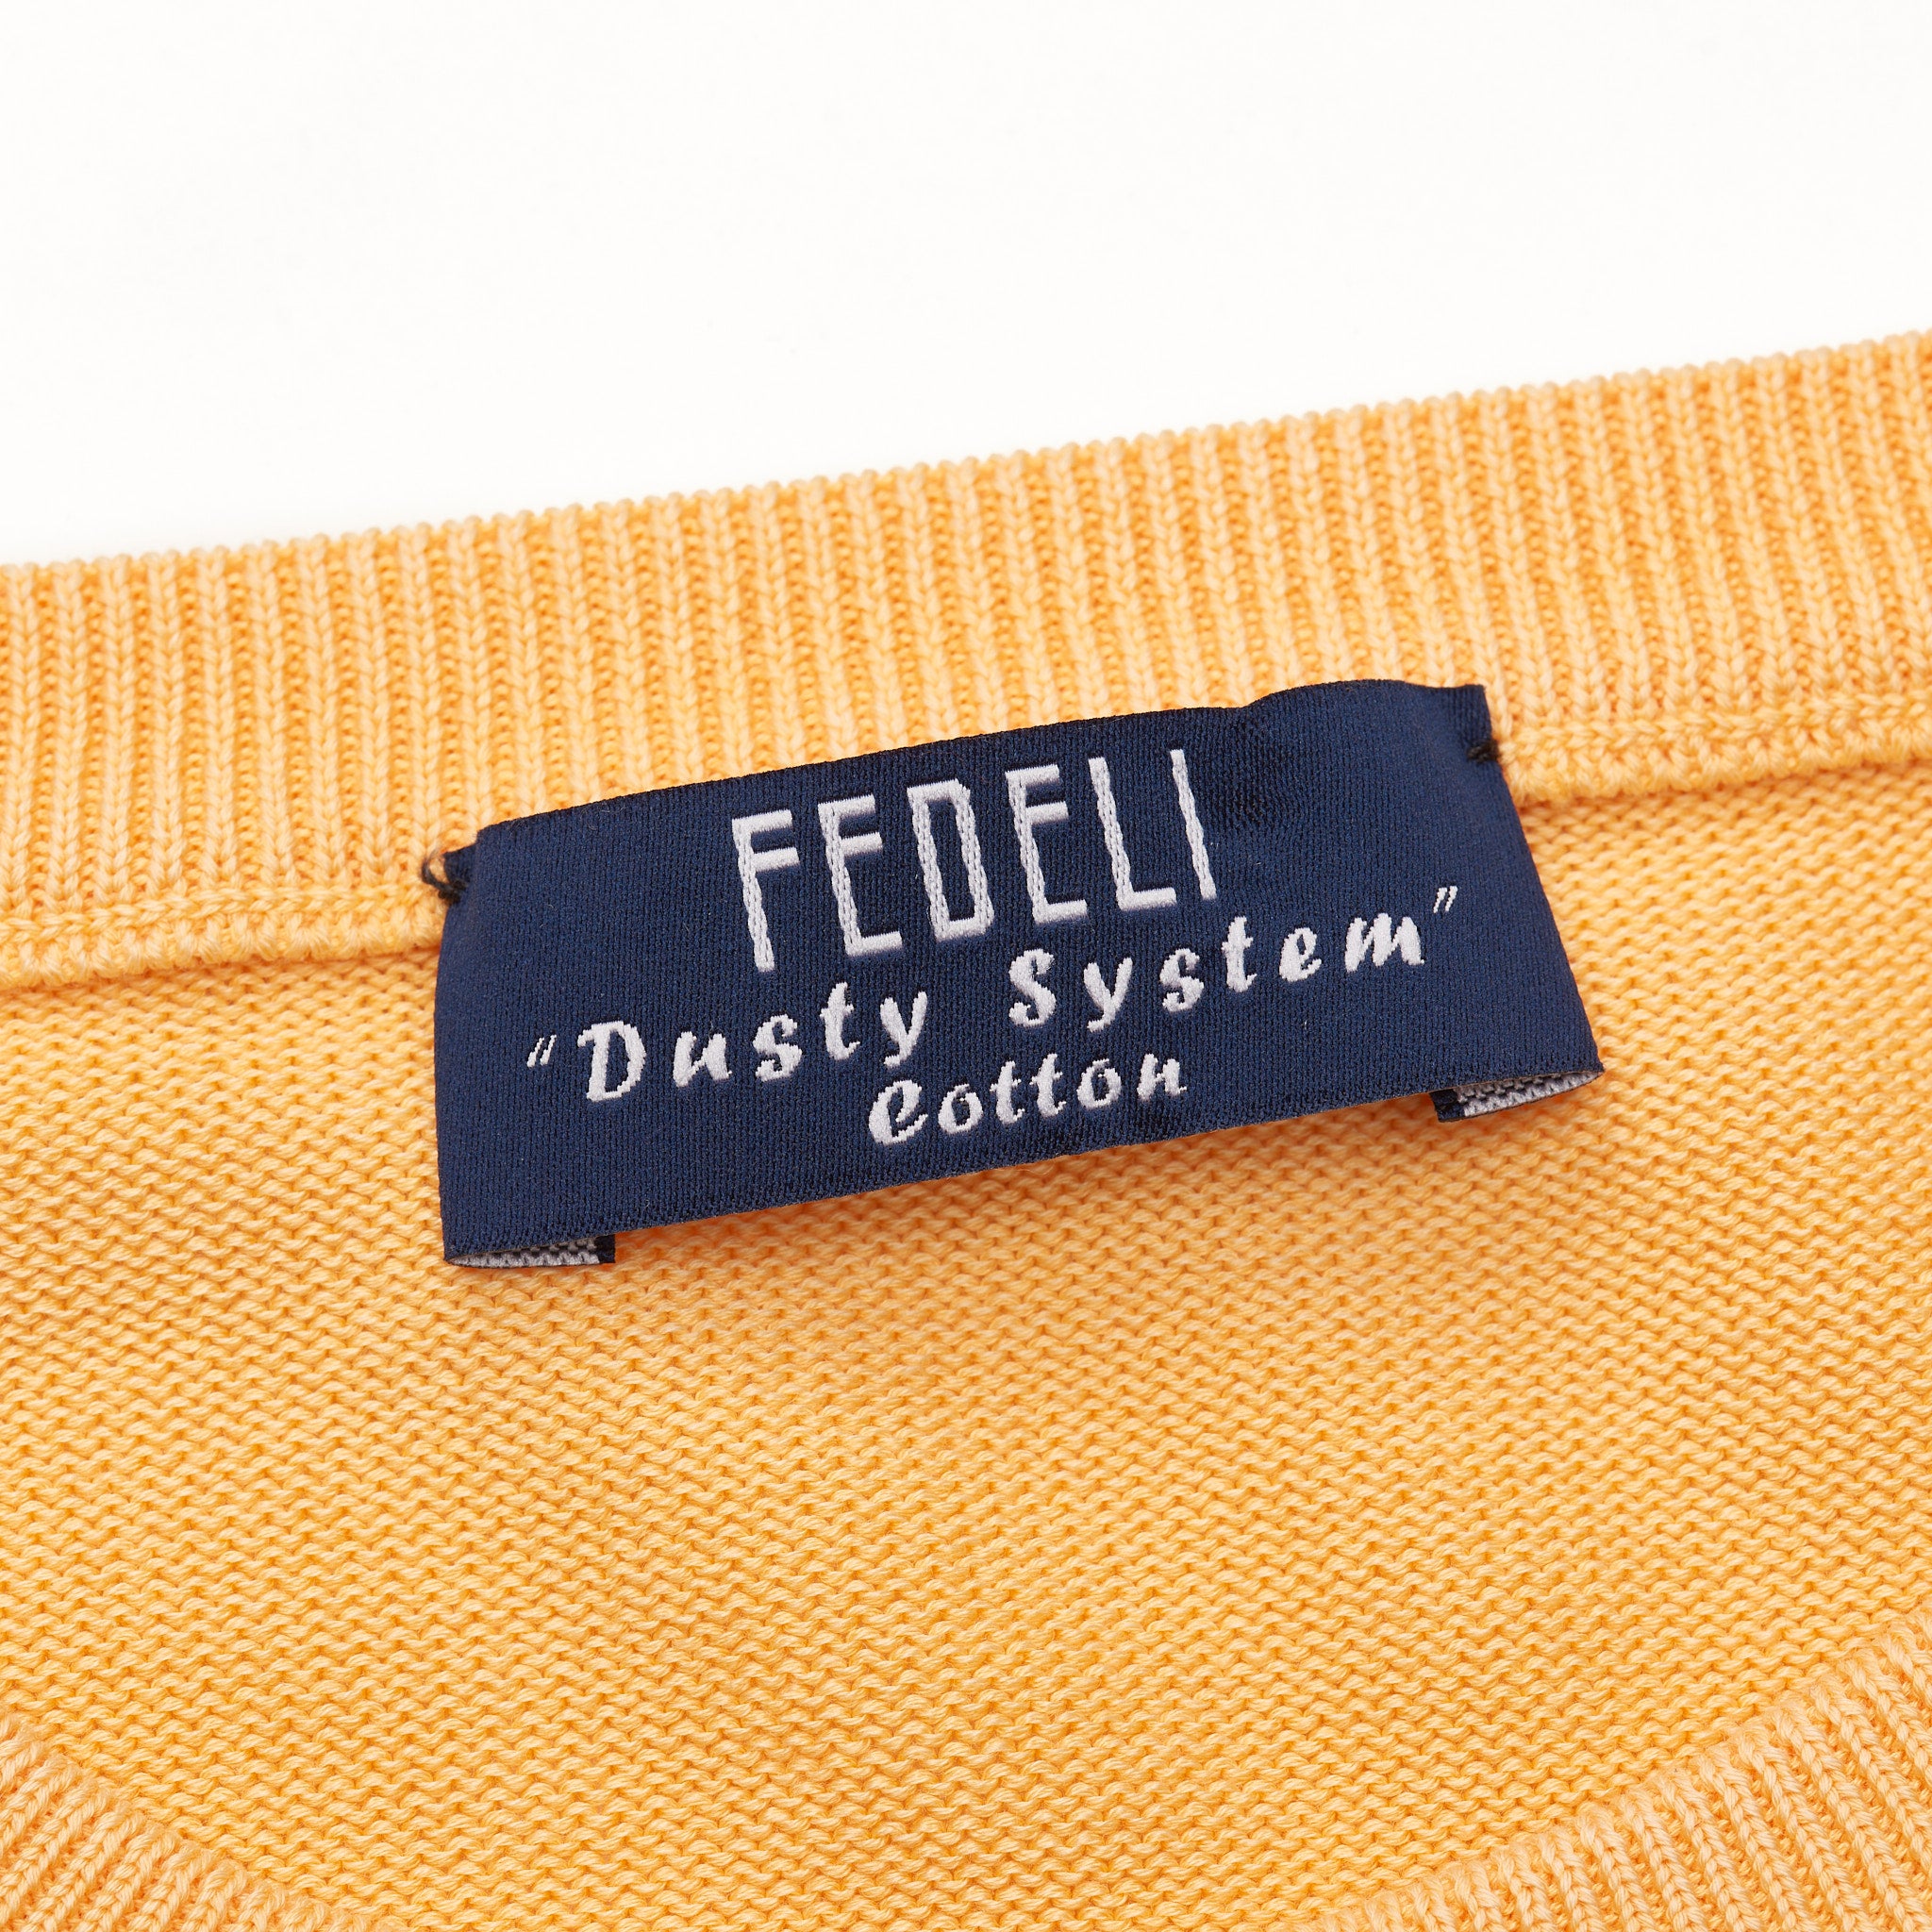 FEDELI Peach Dusty System Cotton Crewneck Sweater EU 56 NEW US 2XL FEDELI